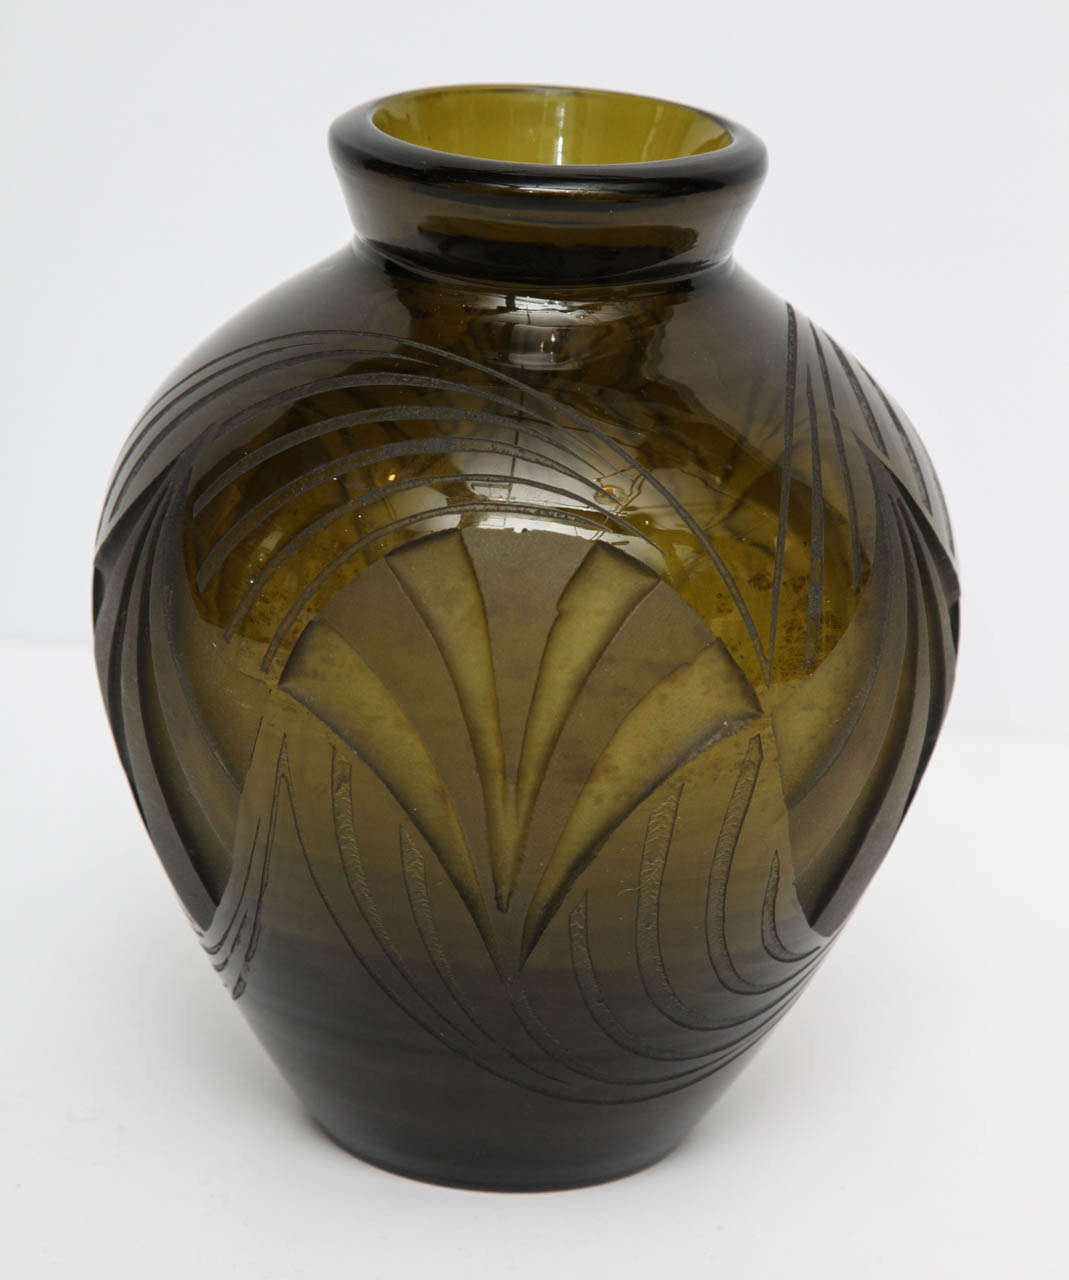 French Legras, Acid-etched glass vase, France, c. 1920